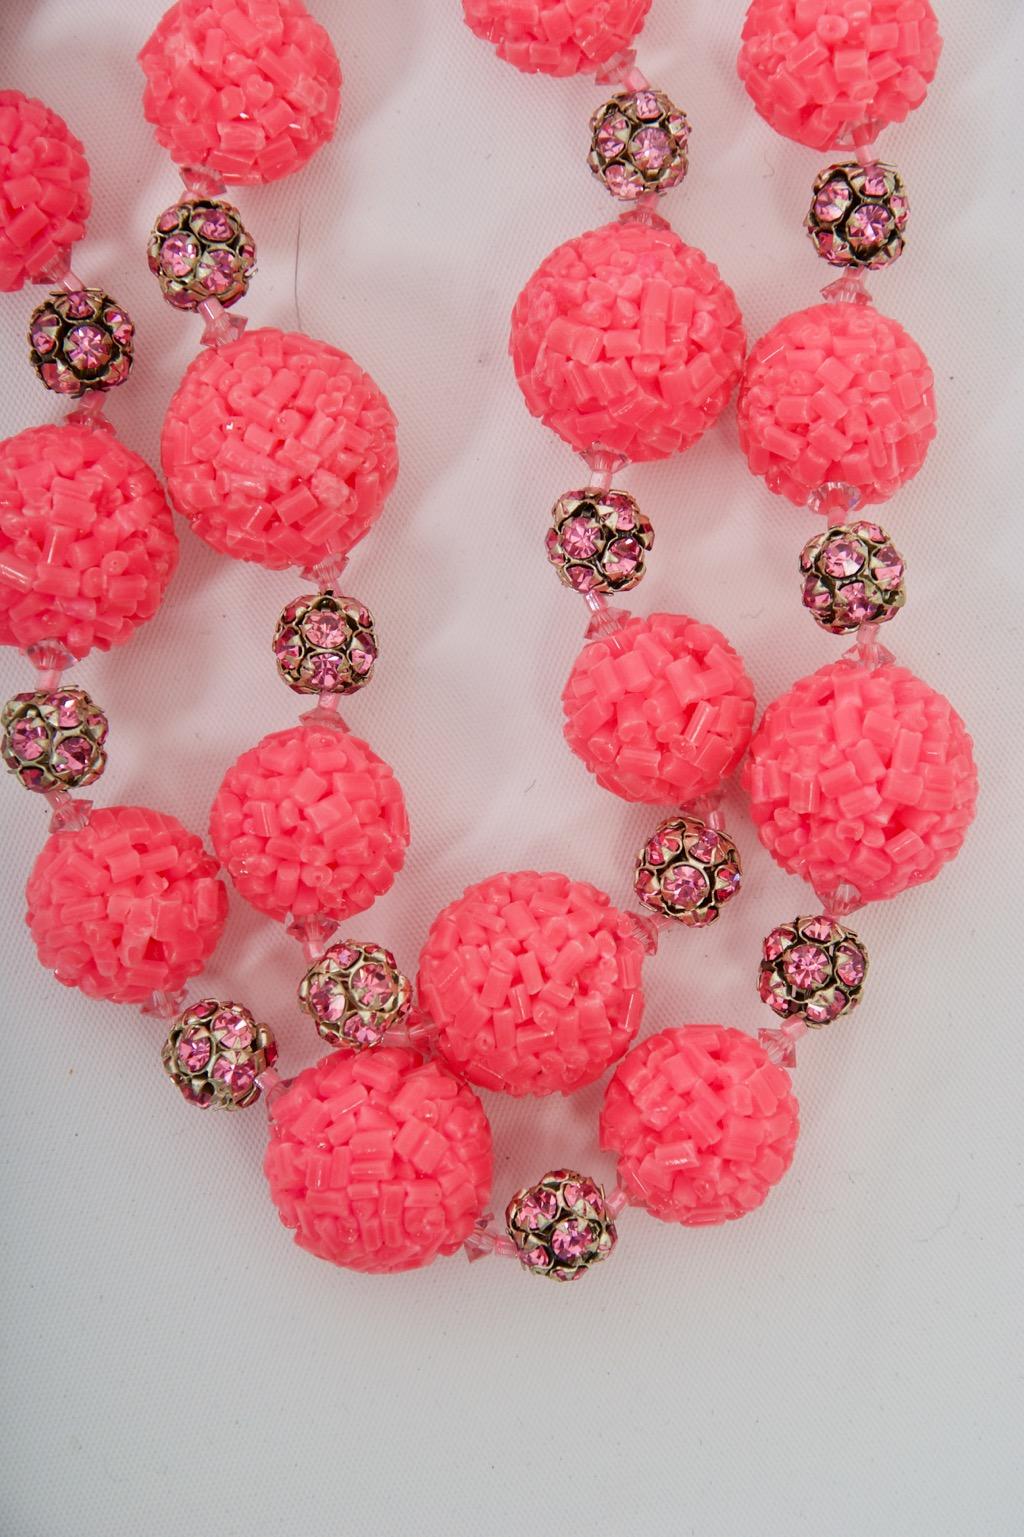 Was für ein Spaß! Vendome c.1960s Halskette und Ohrringe, bestehend aus pinkfarbenen Perlenkugeln, die sich mit pinkfarbenen Kristallrondellen abwechseln. Die doppelreihige Halskette liegt eng am Hals an und hat einen verstellbaren silbernen